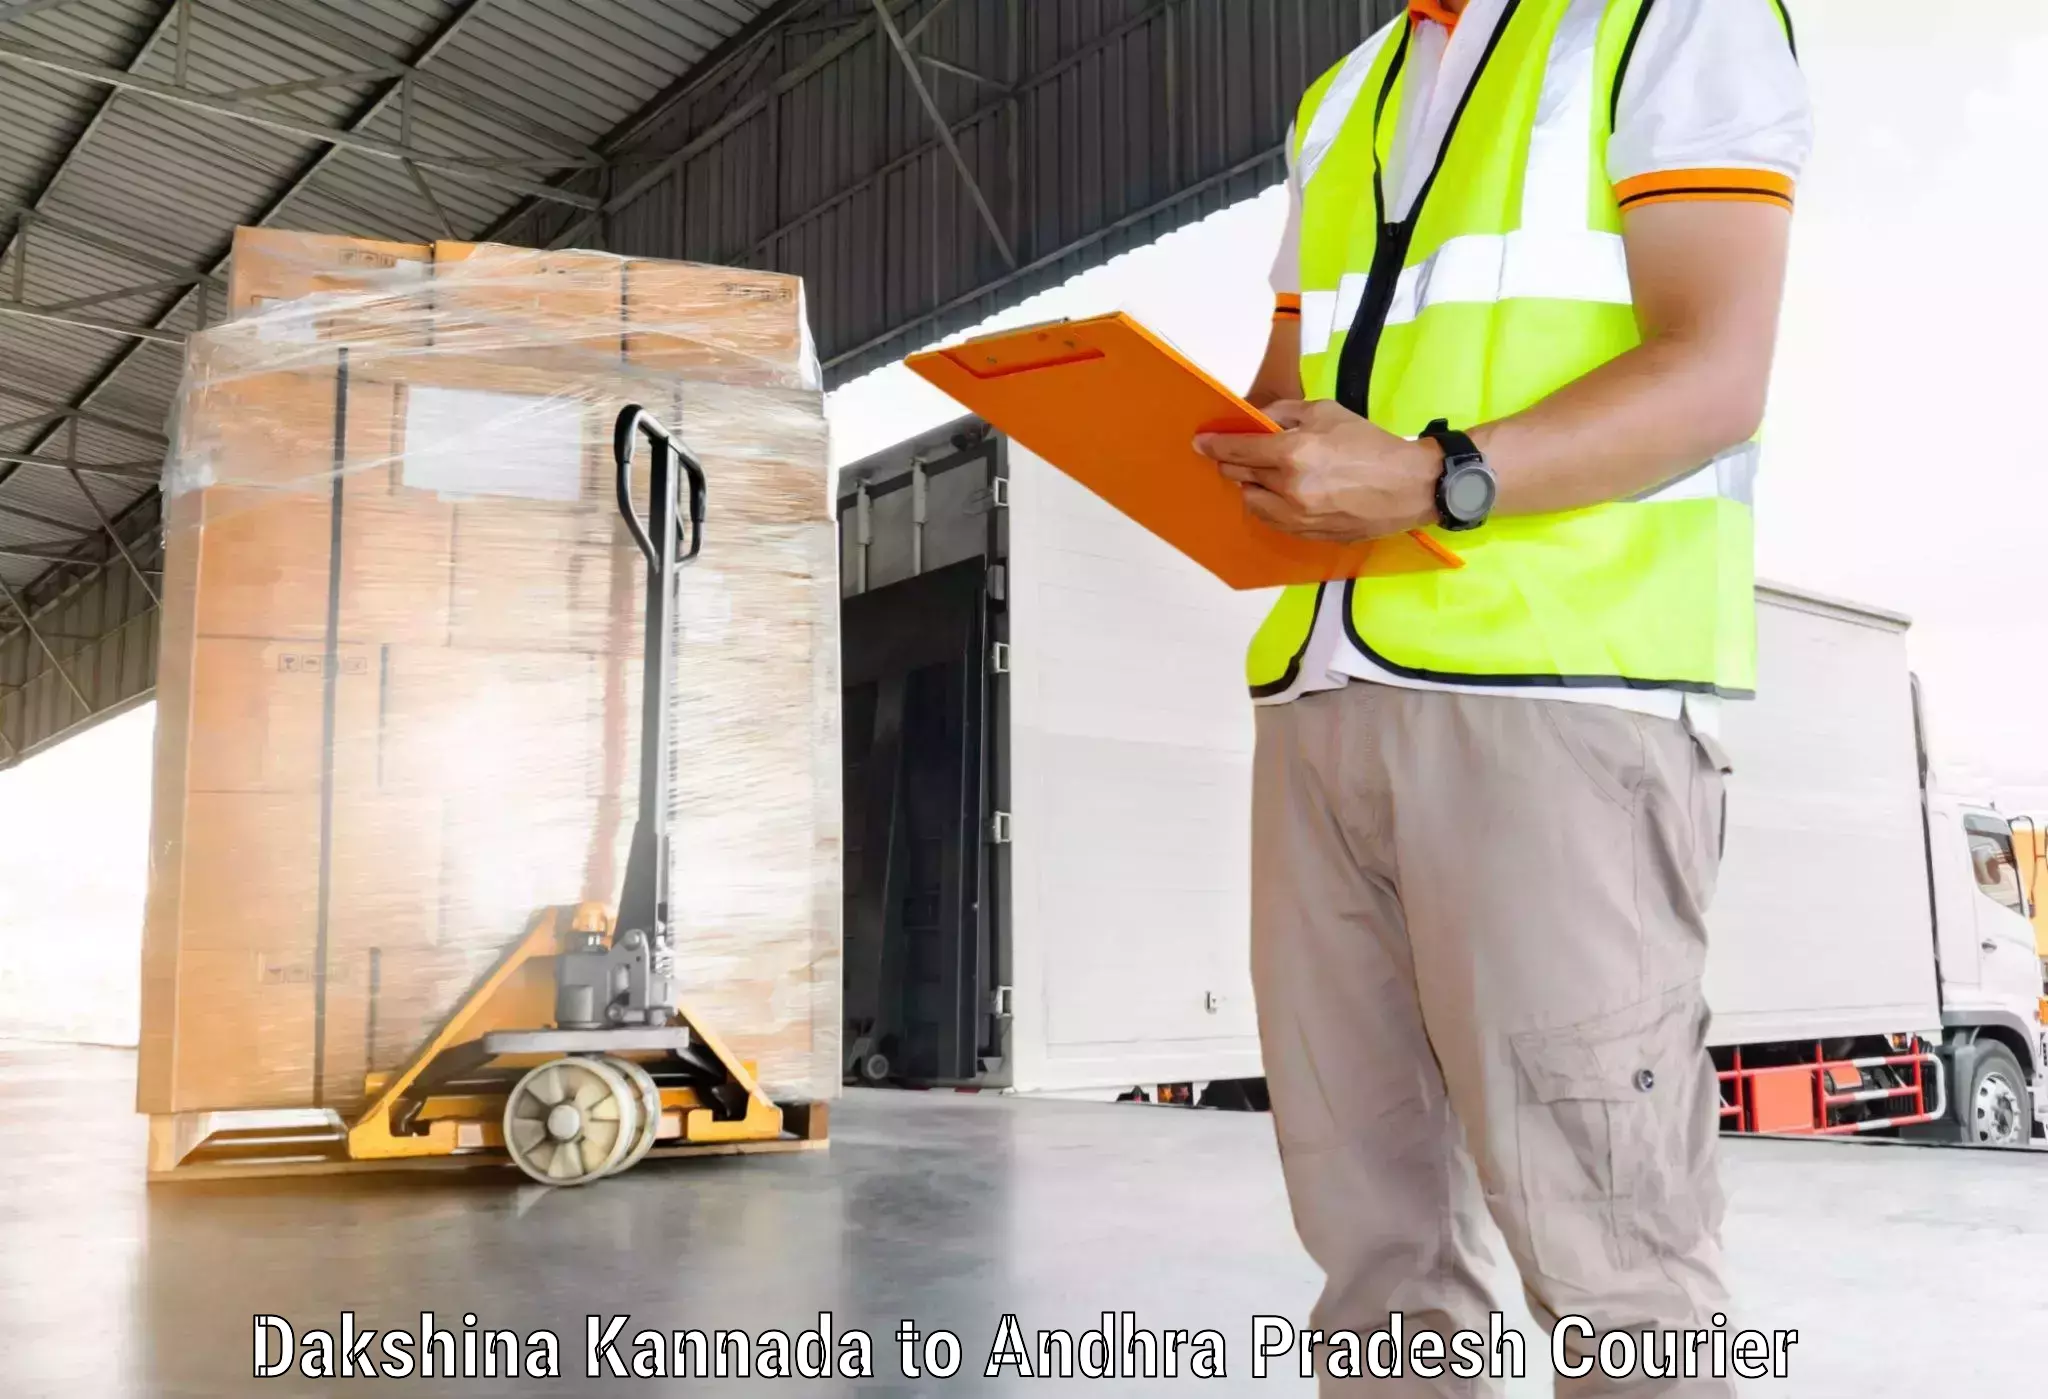 Advanced shipping technology Dakshina Kannada to Chagallu